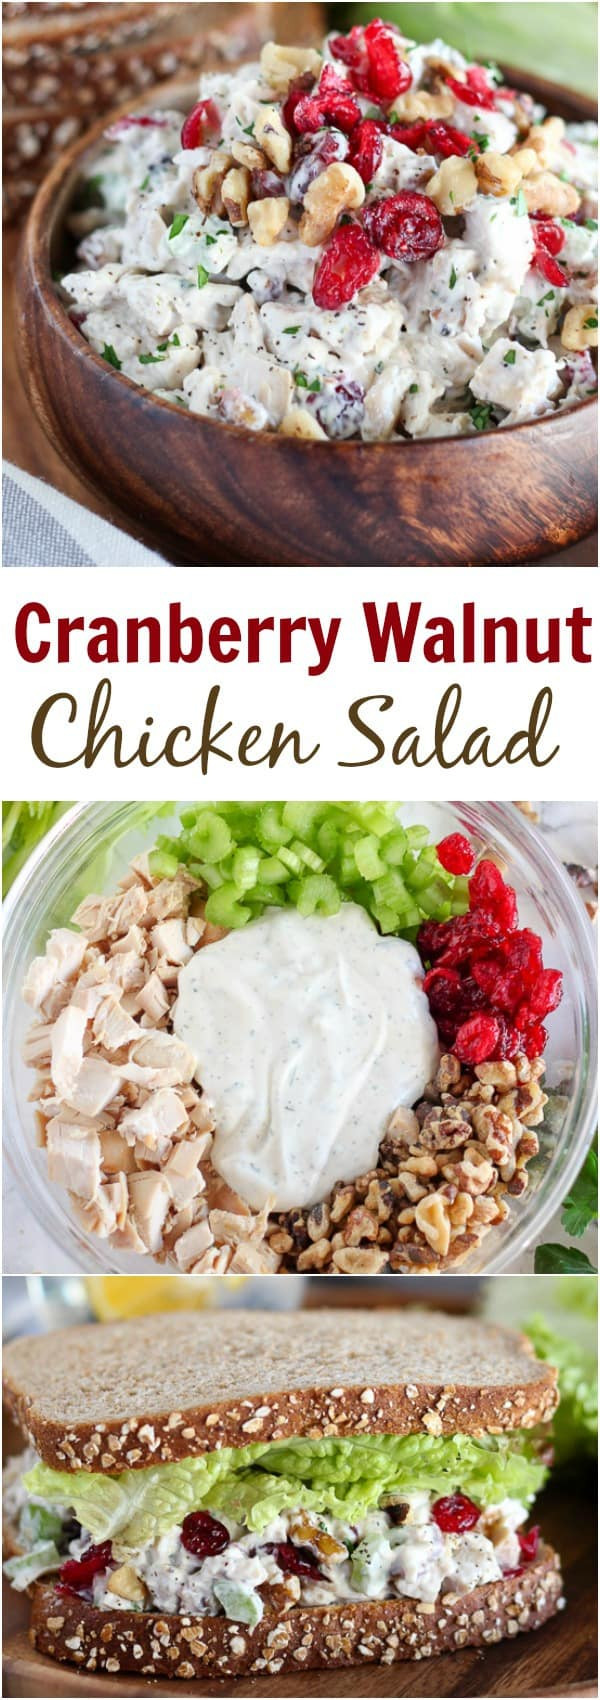 Chicken Salad Recipe With Cranberries
 Cranberry Walnut Chicken Salad